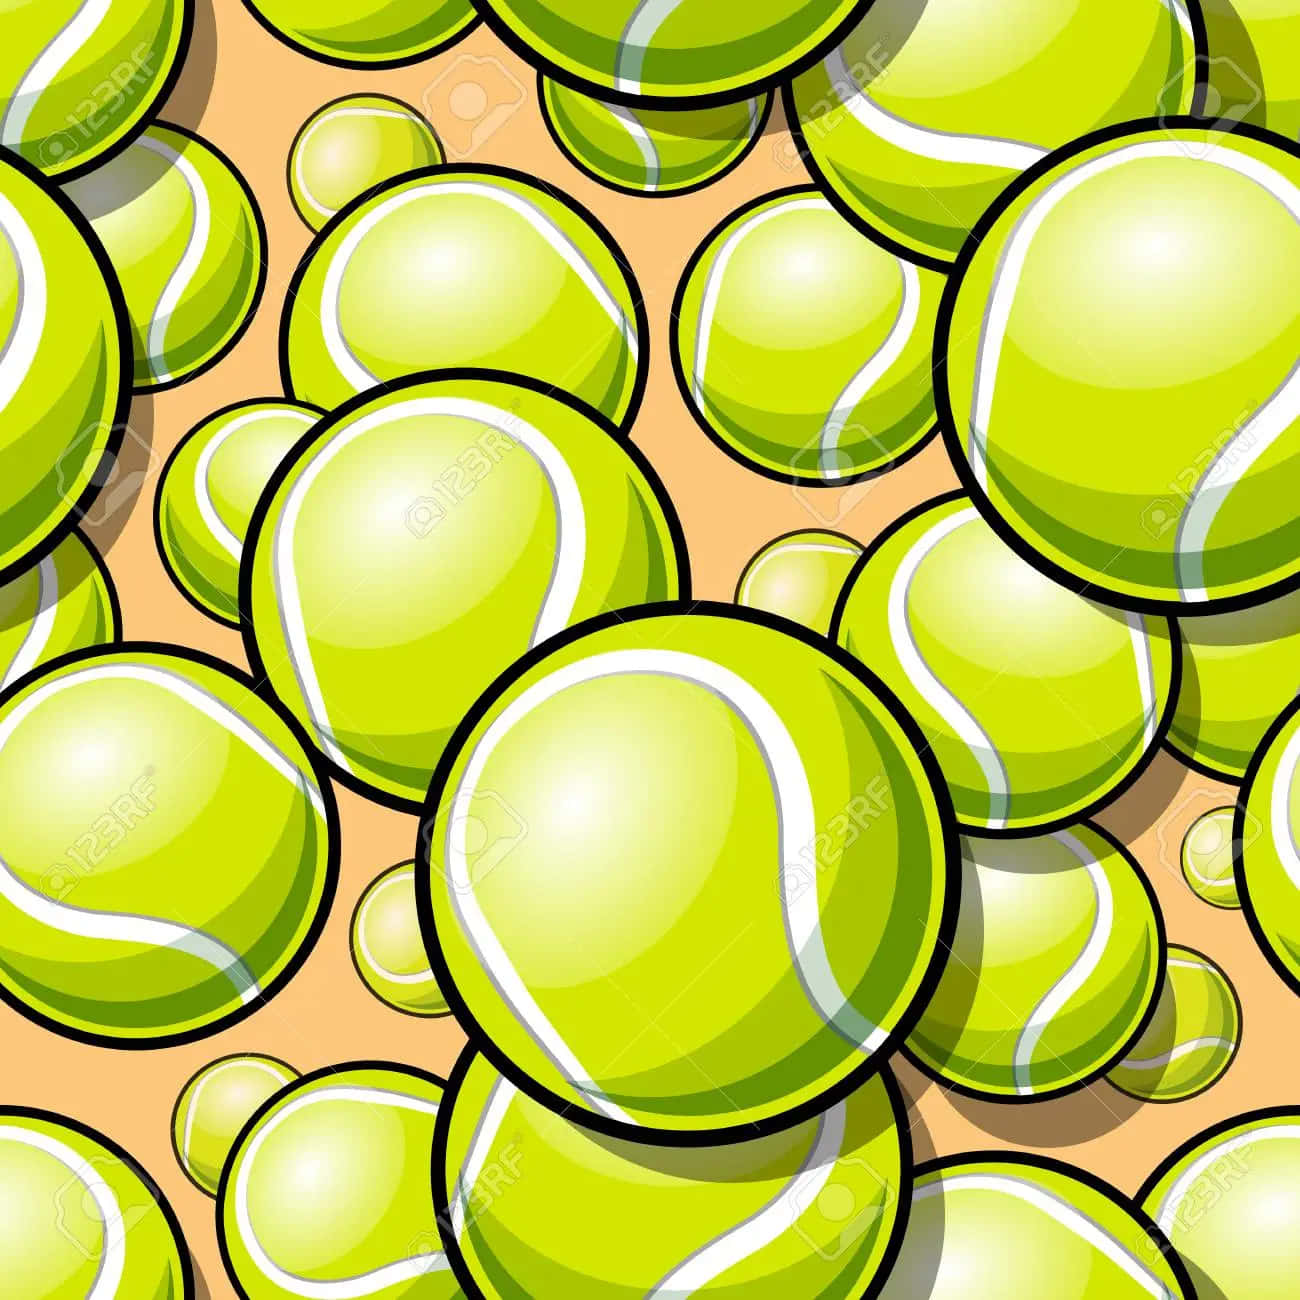 Tennisbold 1300 X 1300 Wallpaper